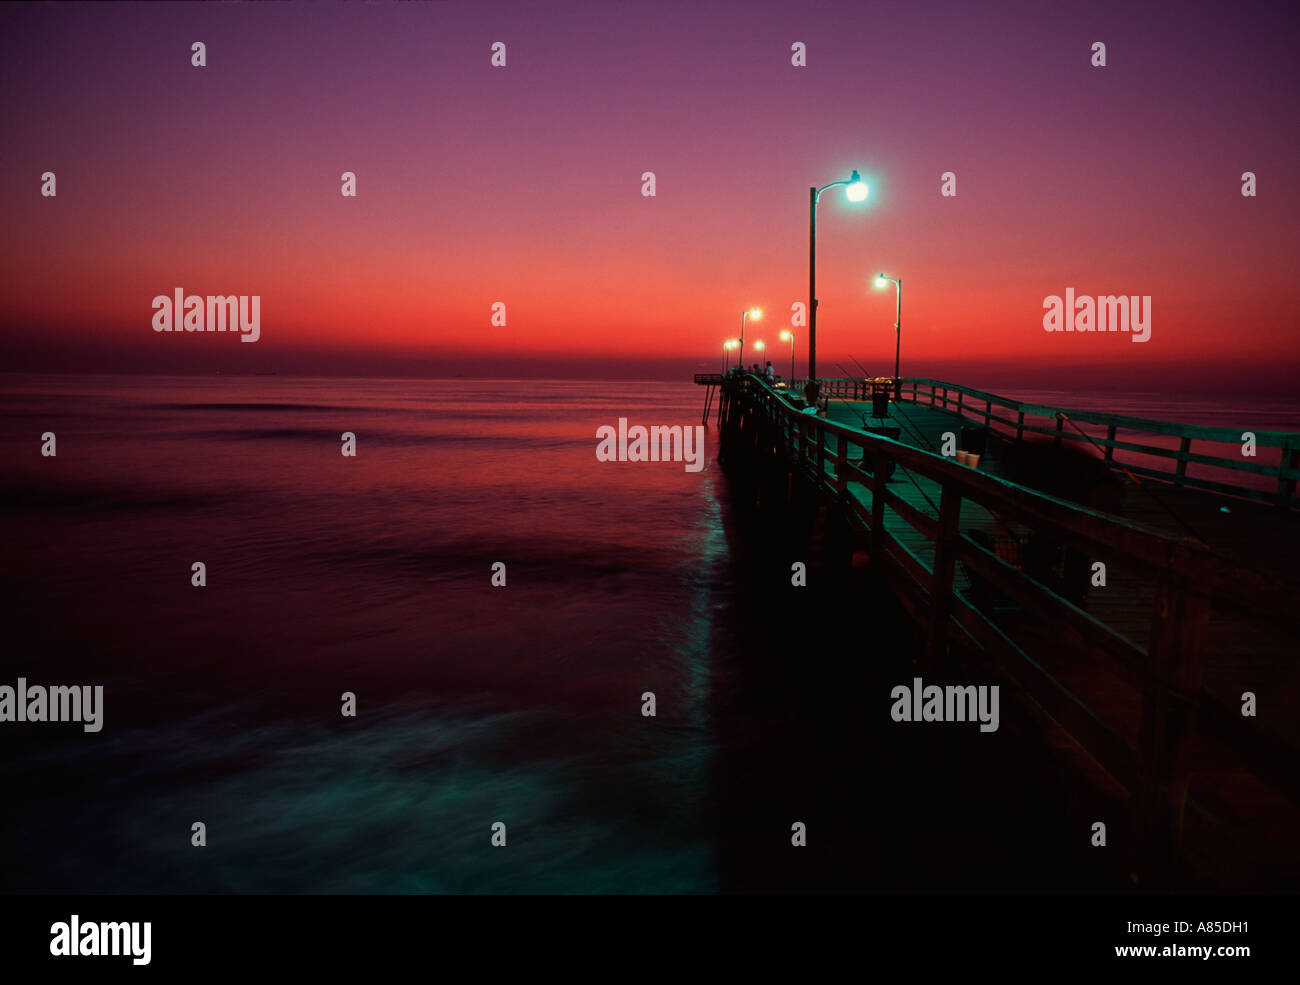 https://c8.alamy.com/comp/A85DH1/va-virginia-beach-virginia-beach-fishing-pier-at-sunrise-pier-lights-A85DH1.jpg